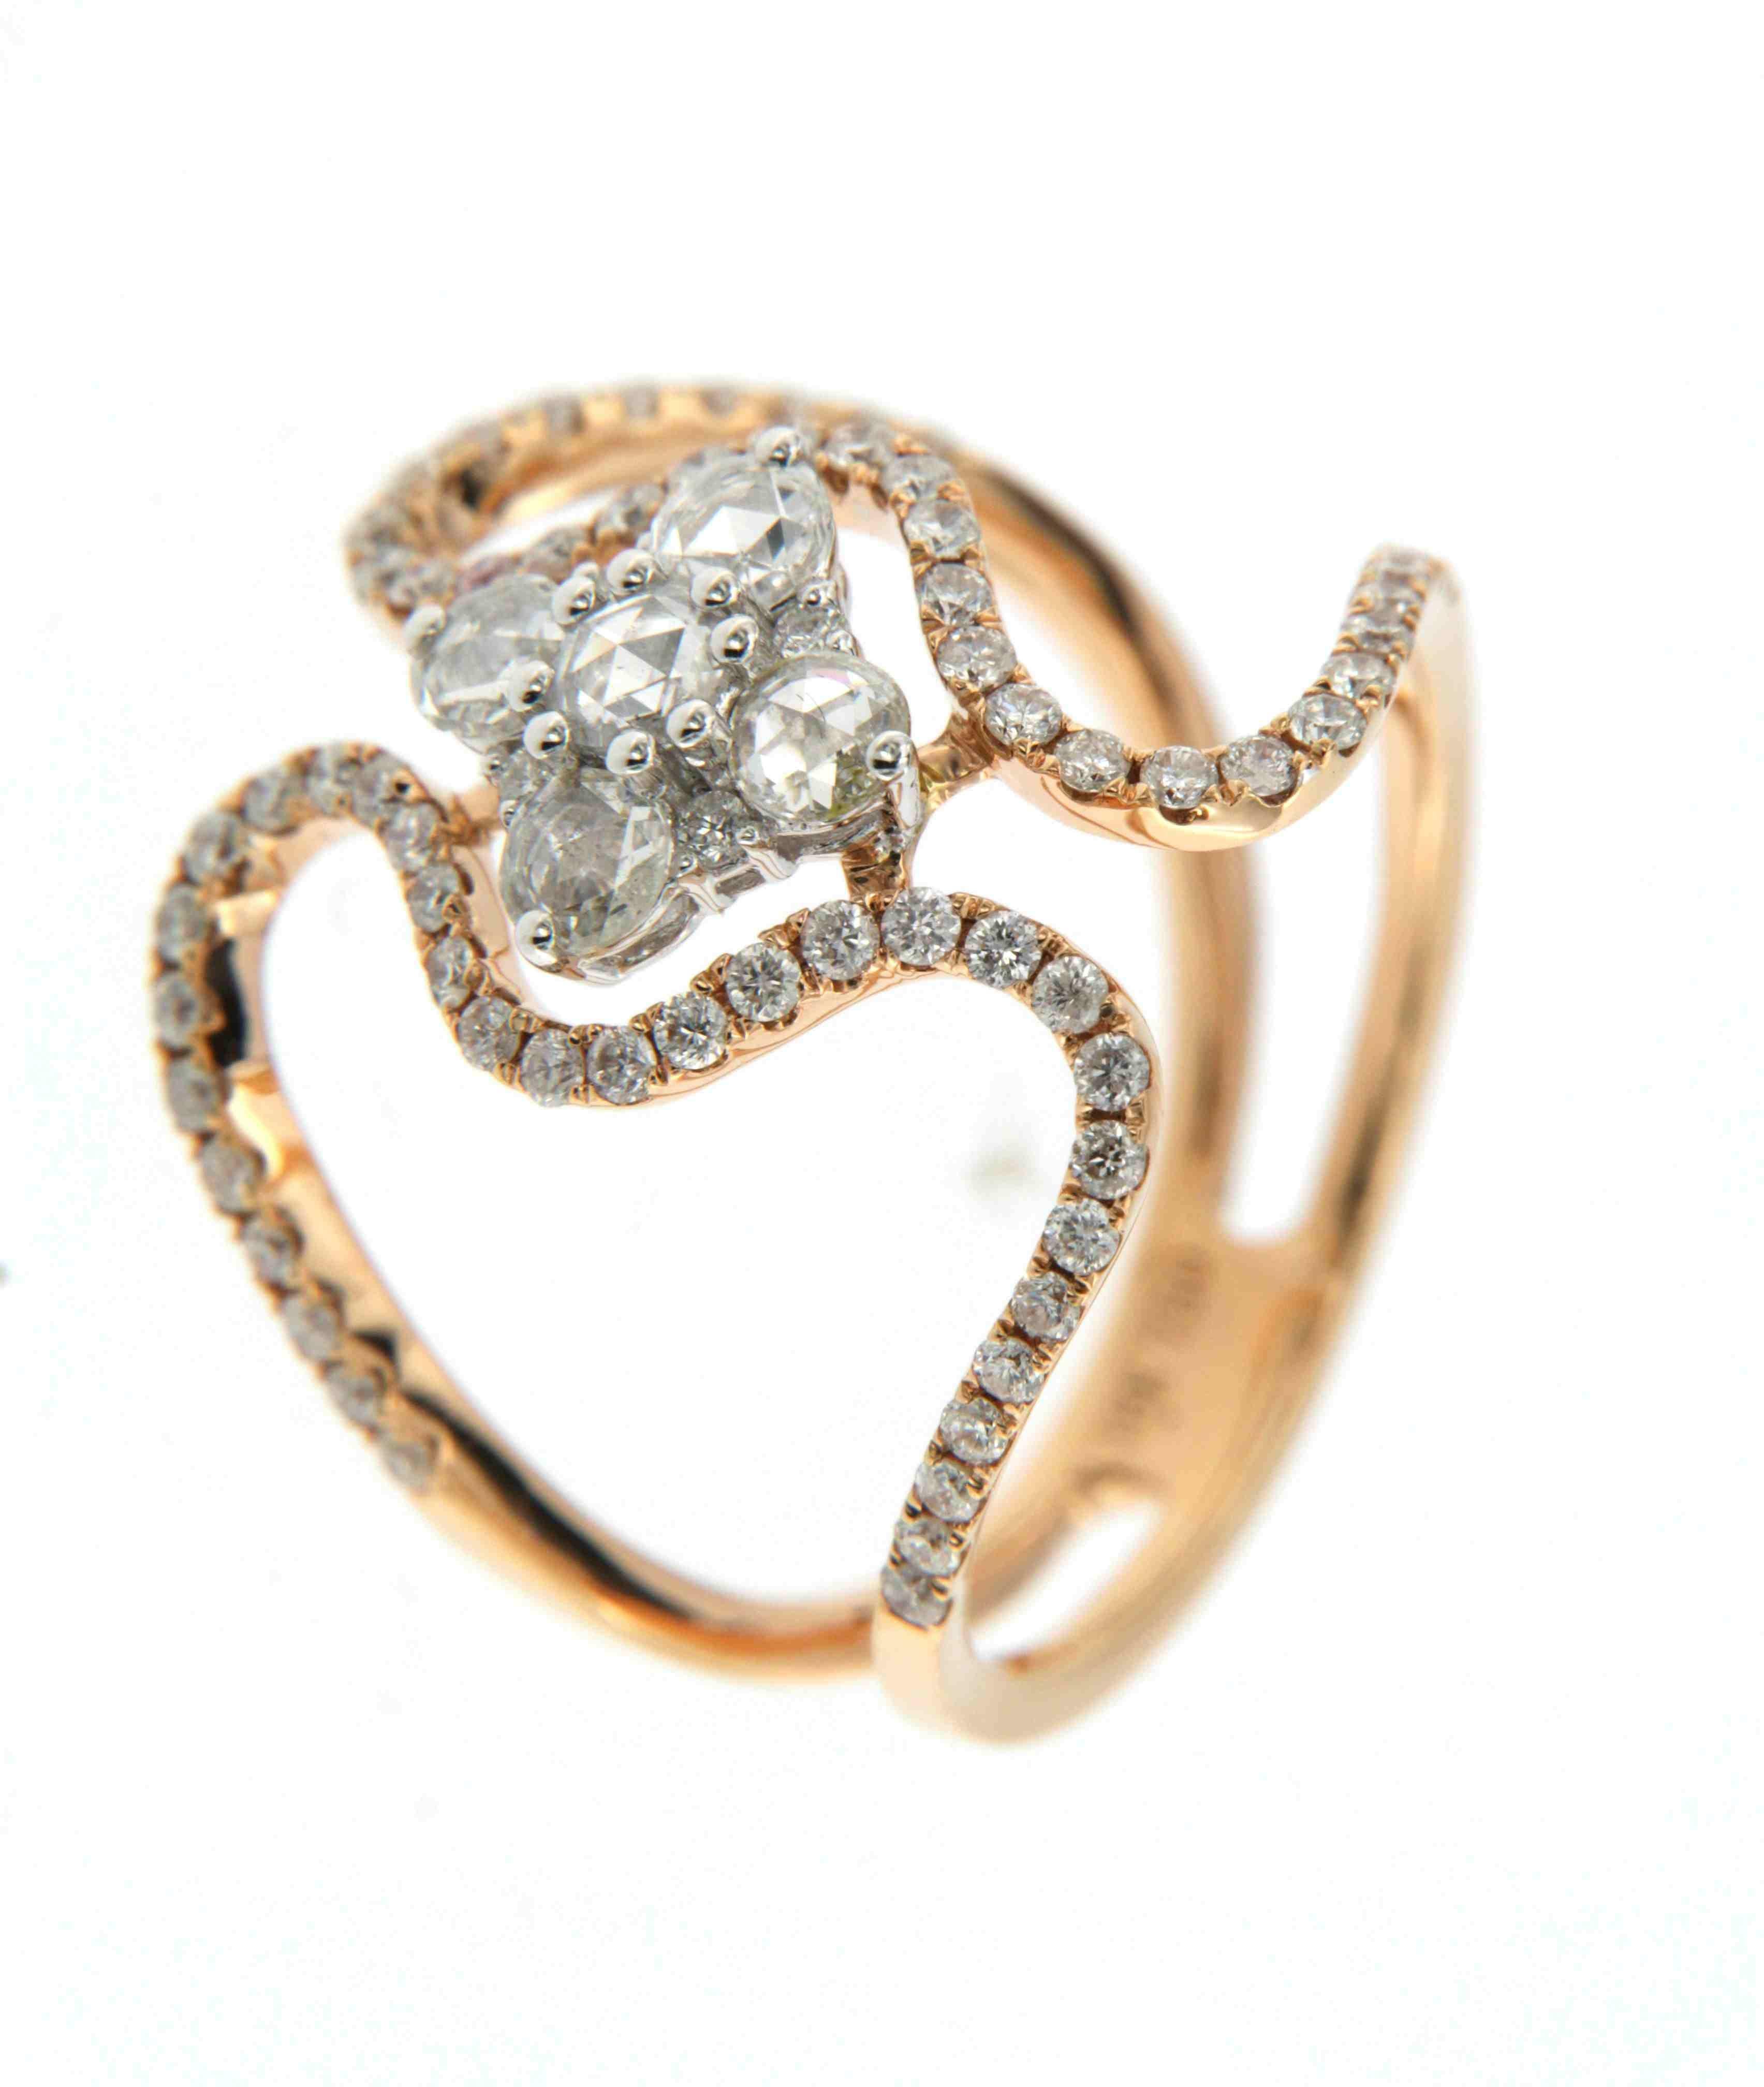 Dieser bemerkenswerte Ring ist ein wunderschön inszeniertes Stück aus 18 Karat Roségold mit einem komplizierten Design, das sowohl Vintage-Charme als auch zeitgenössische Eleganz ausstrahlt. In der Mitte des Rings befinden sich fünf runde Diamanten